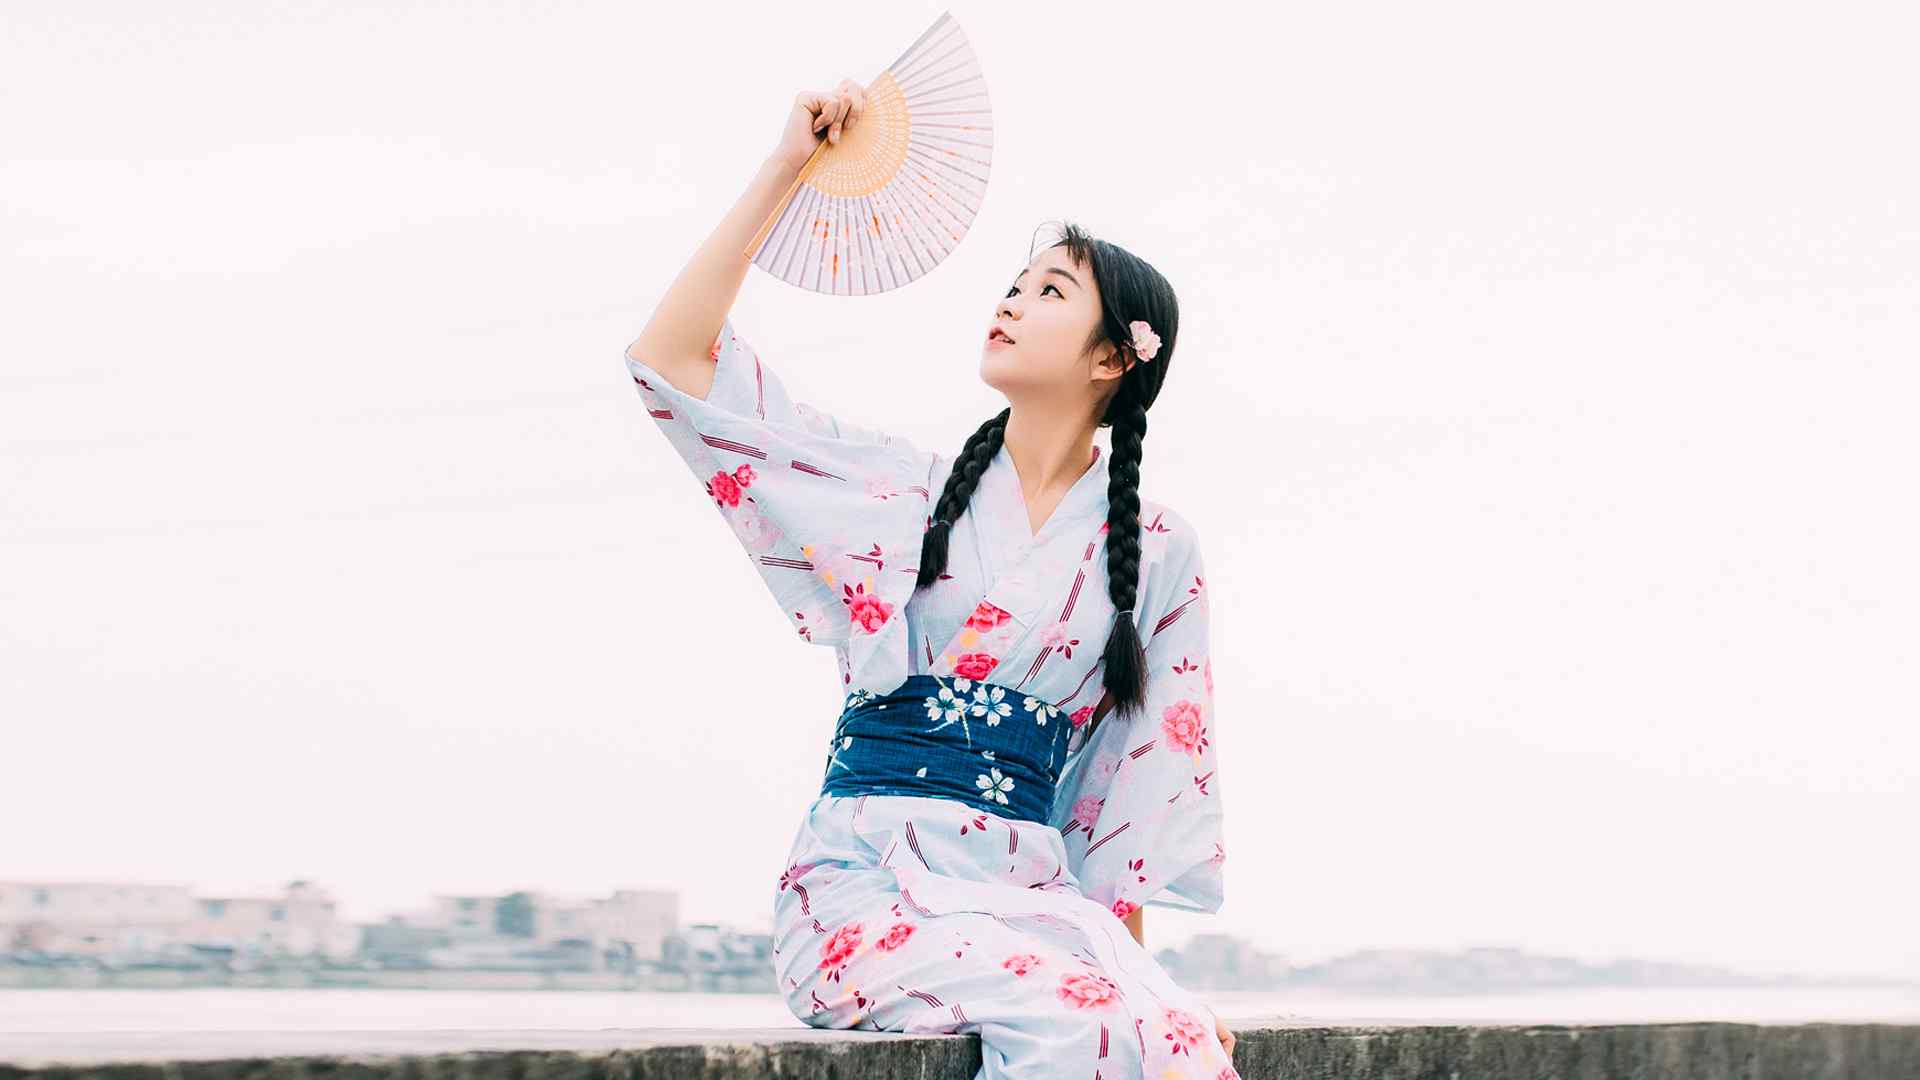 可爱日系美女和服写真高清壁纸